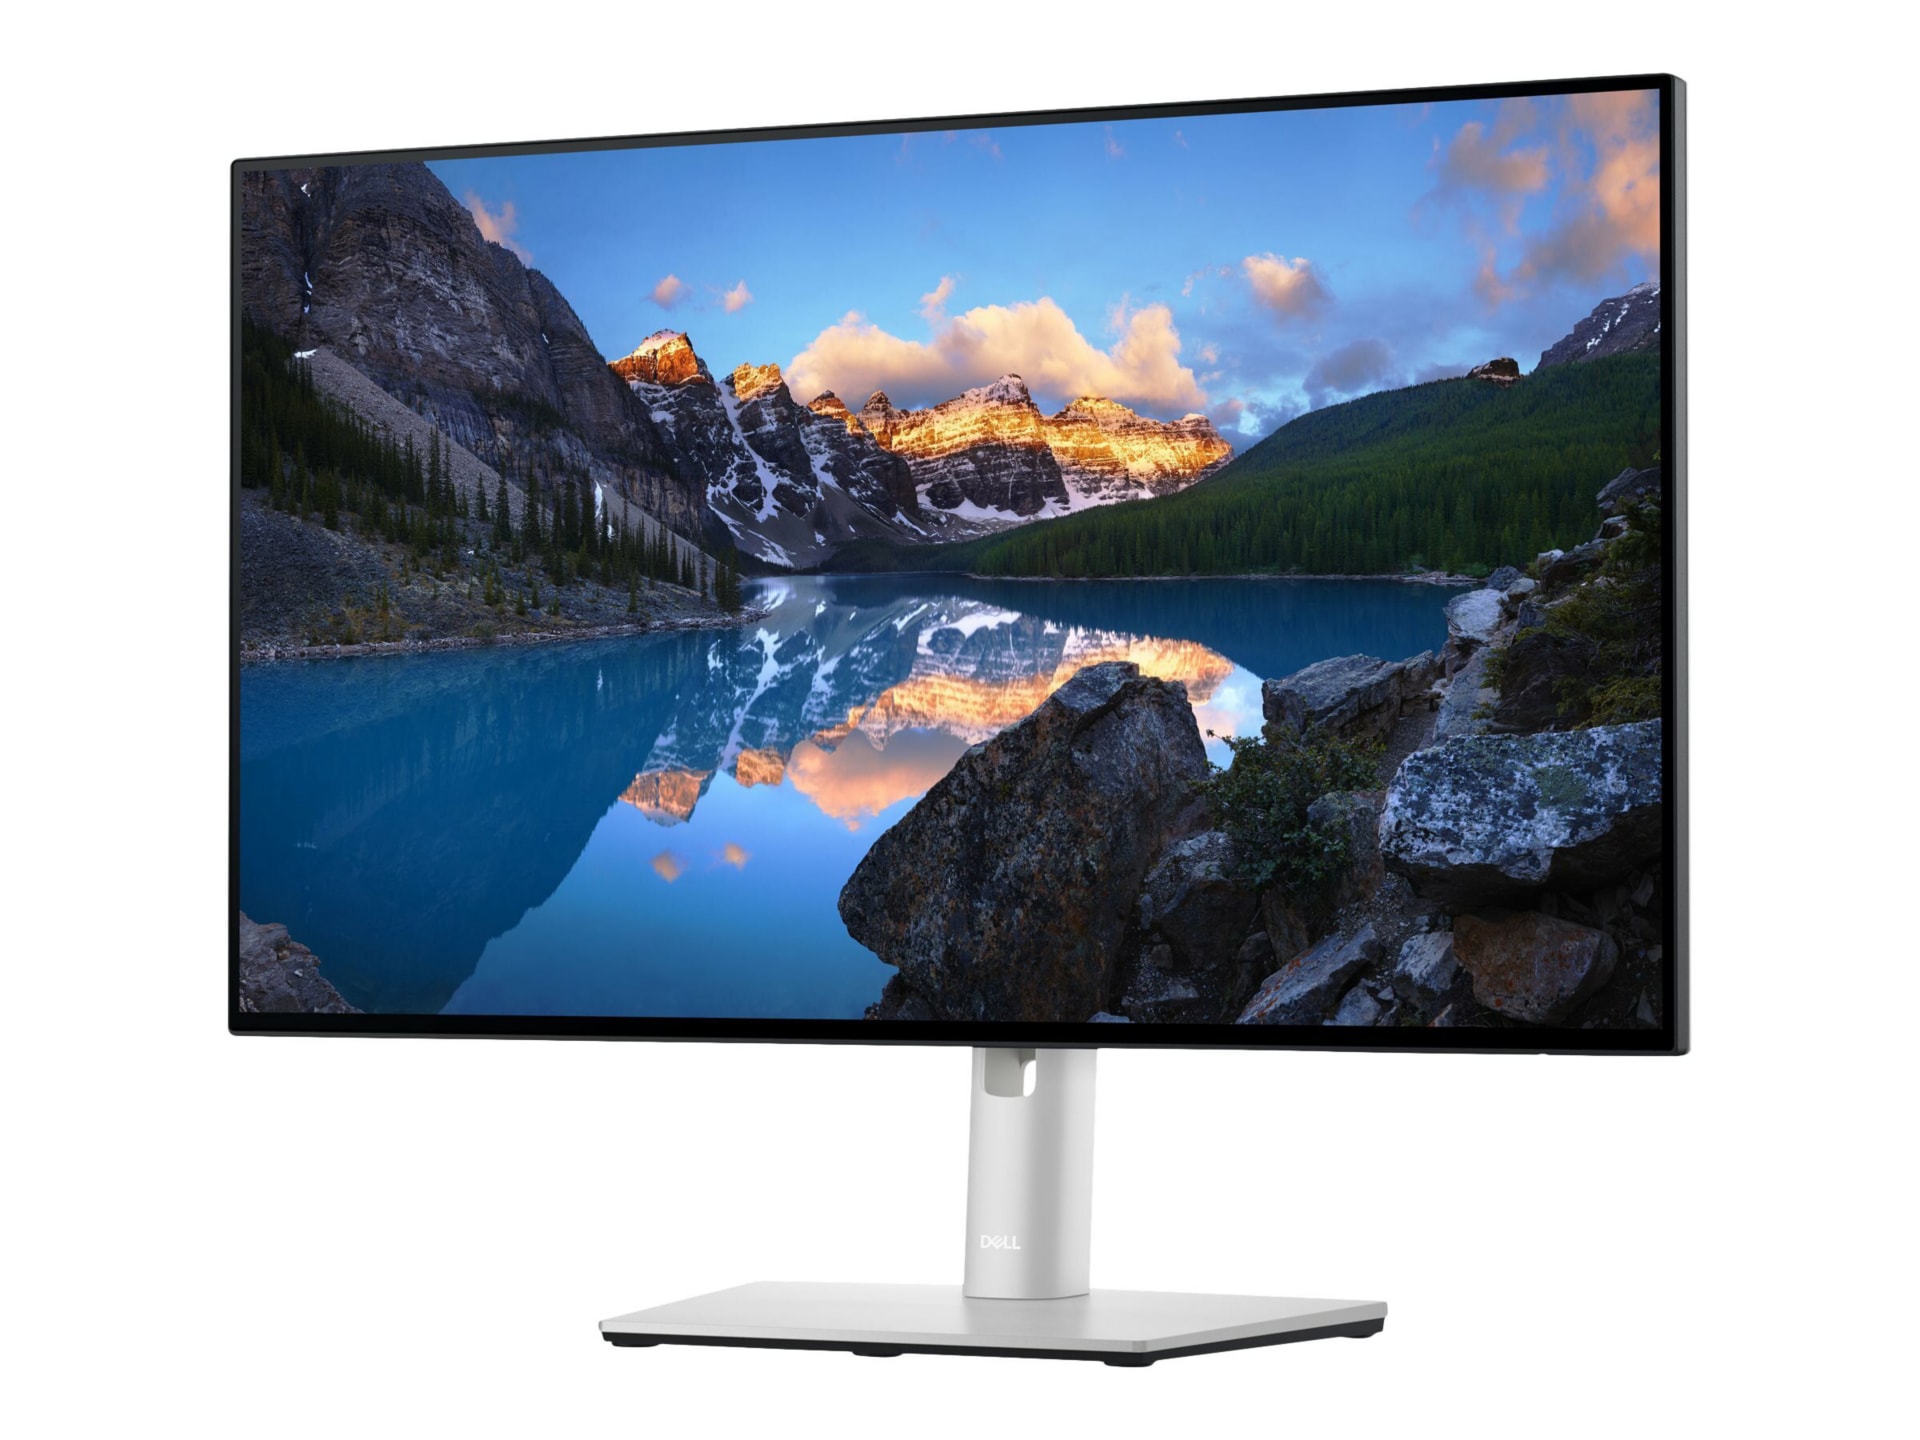 Dell UltraSharp U2422H - LED monitor - Full HD (1080p) - 24